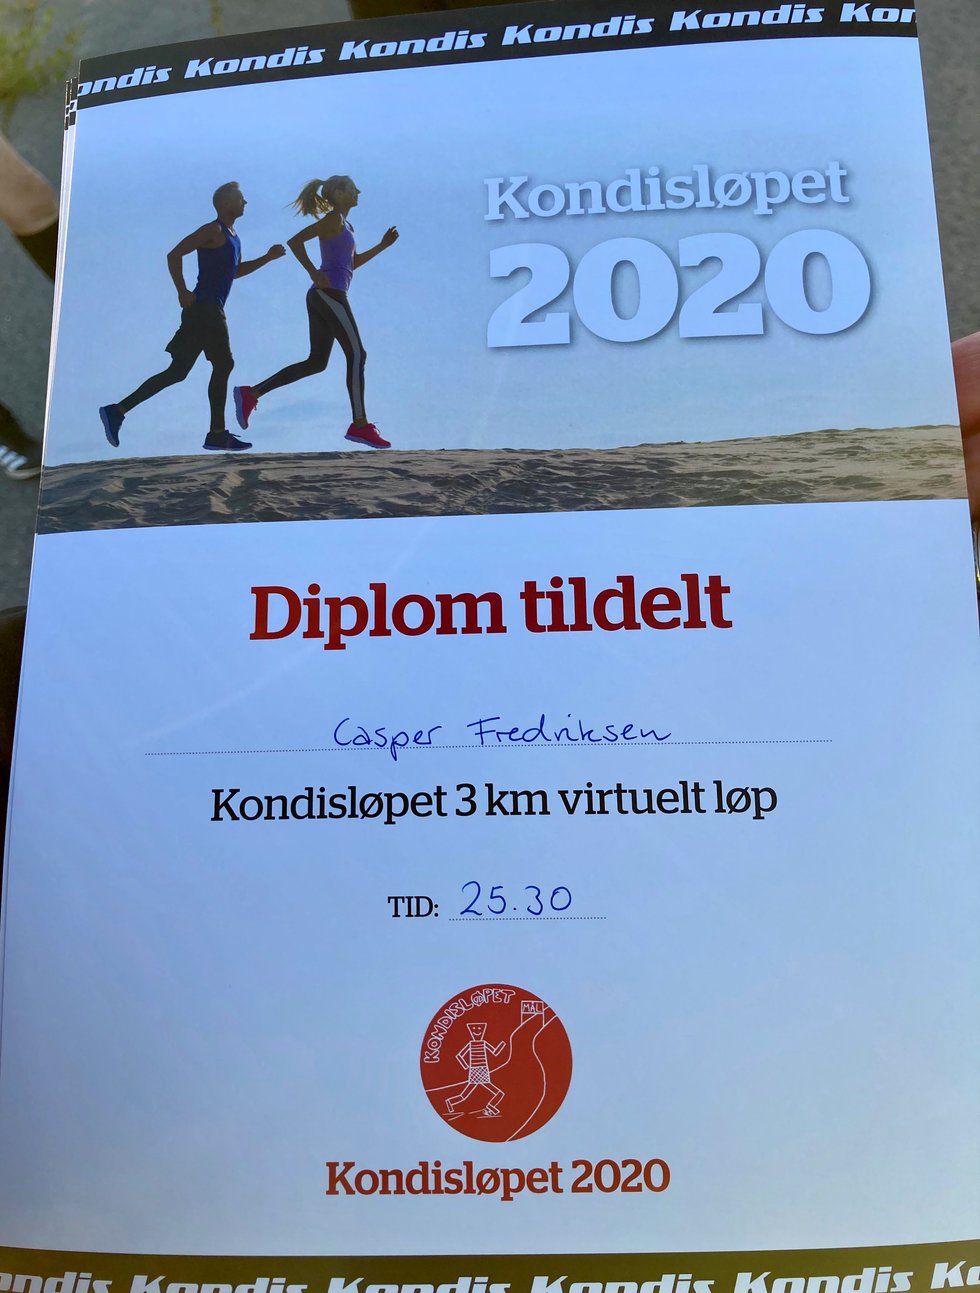 Kondistreninga Årnes hadde 3000 meter testløp i Kondisløpet, august 2020